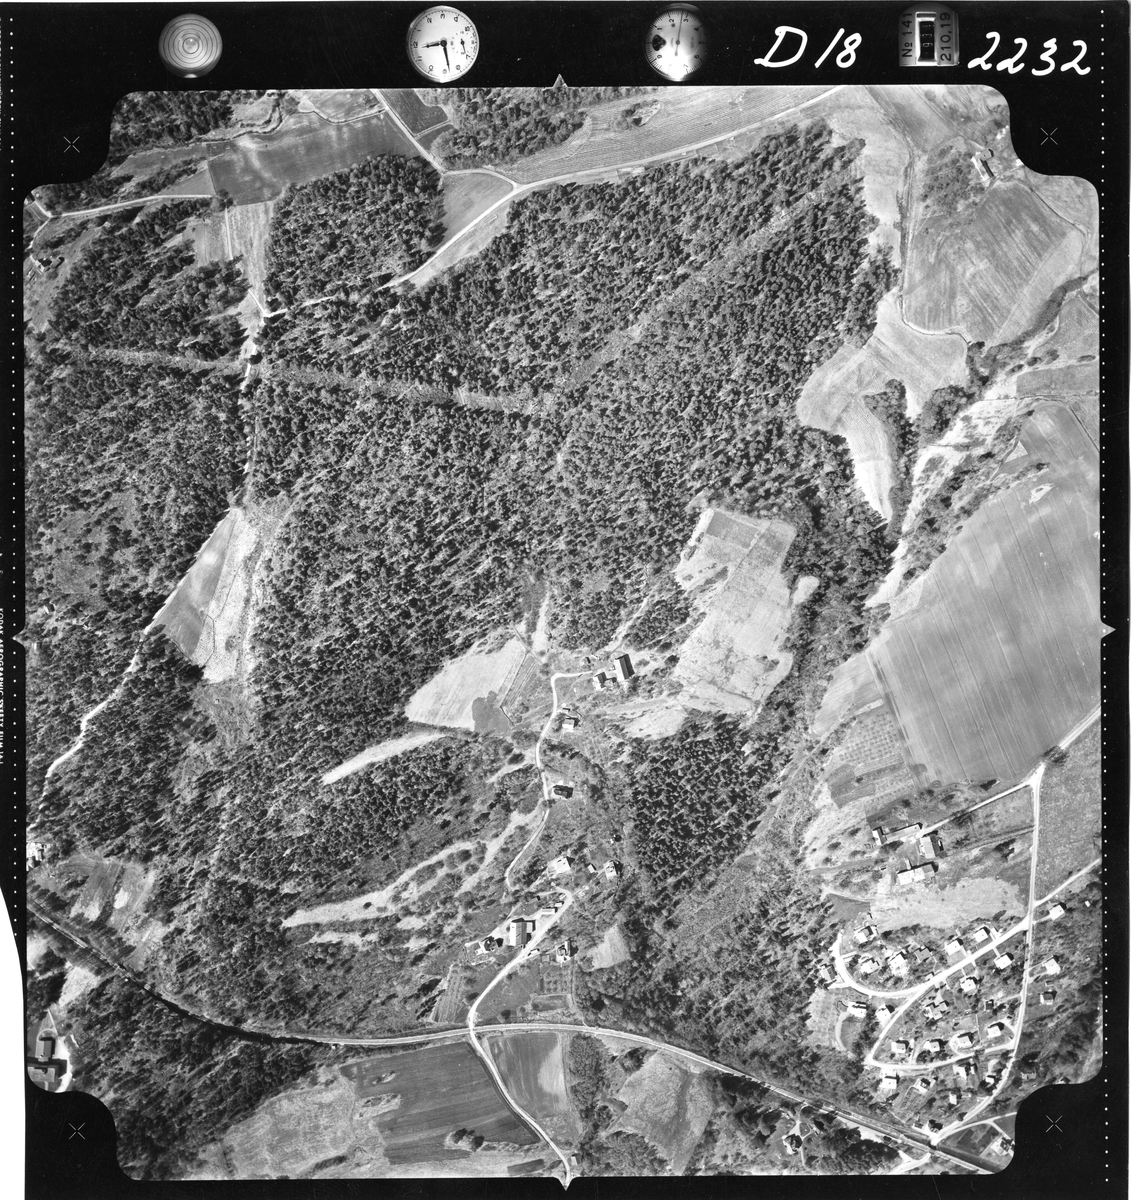 Flyfotoarkiv fra Fjellanger Widerøe AS, fra Porsgrunn Kommune, Stridsklev. Fotografert 16/05-1962. Oppdrag nr 2232, D18